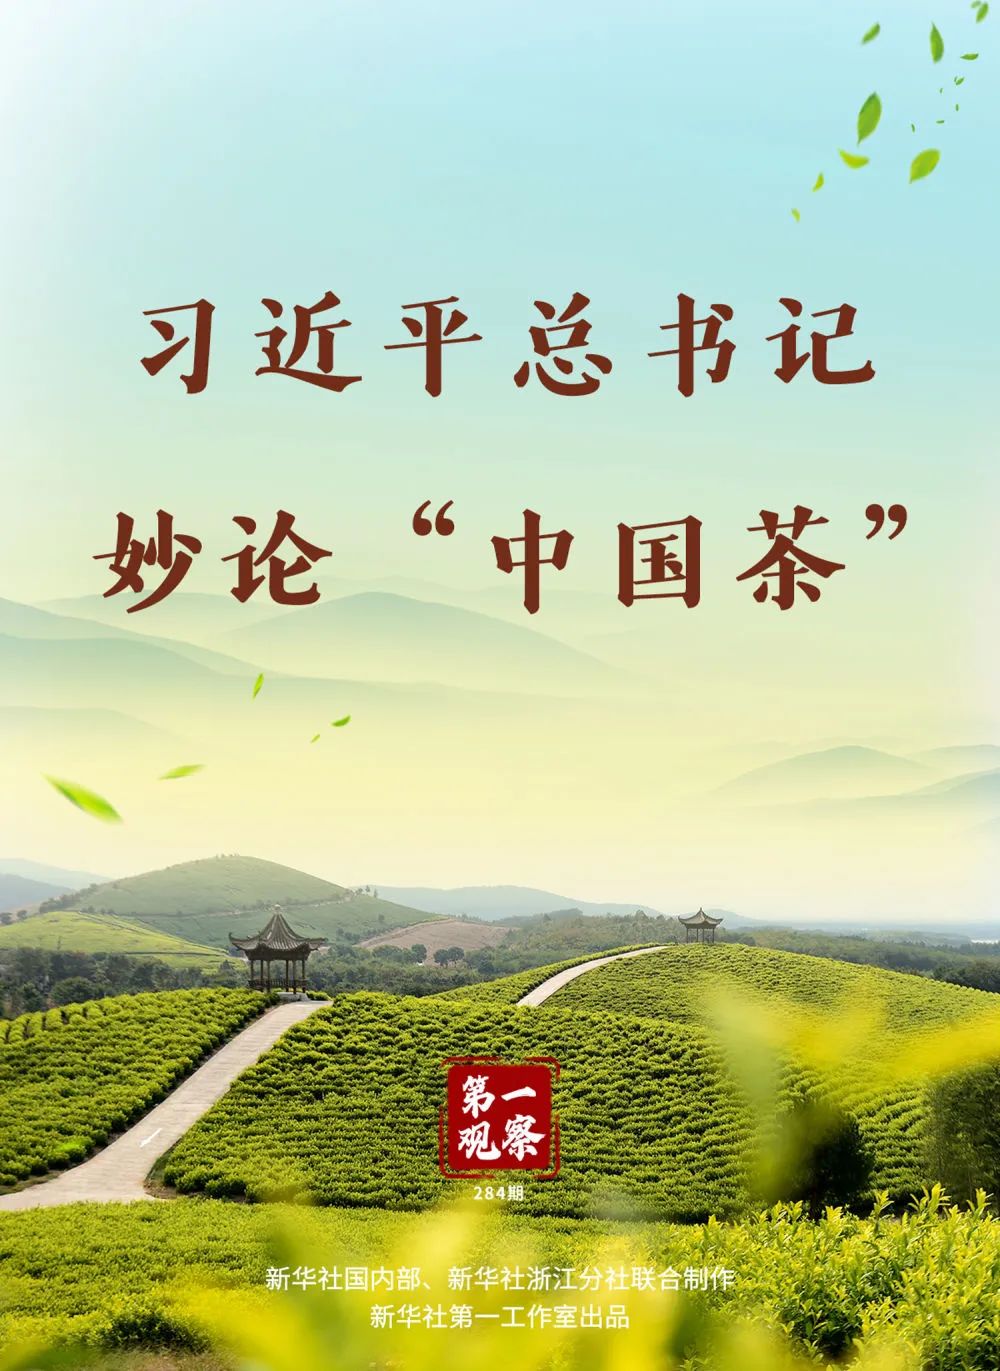 习近平总书记妙论“中国茶”